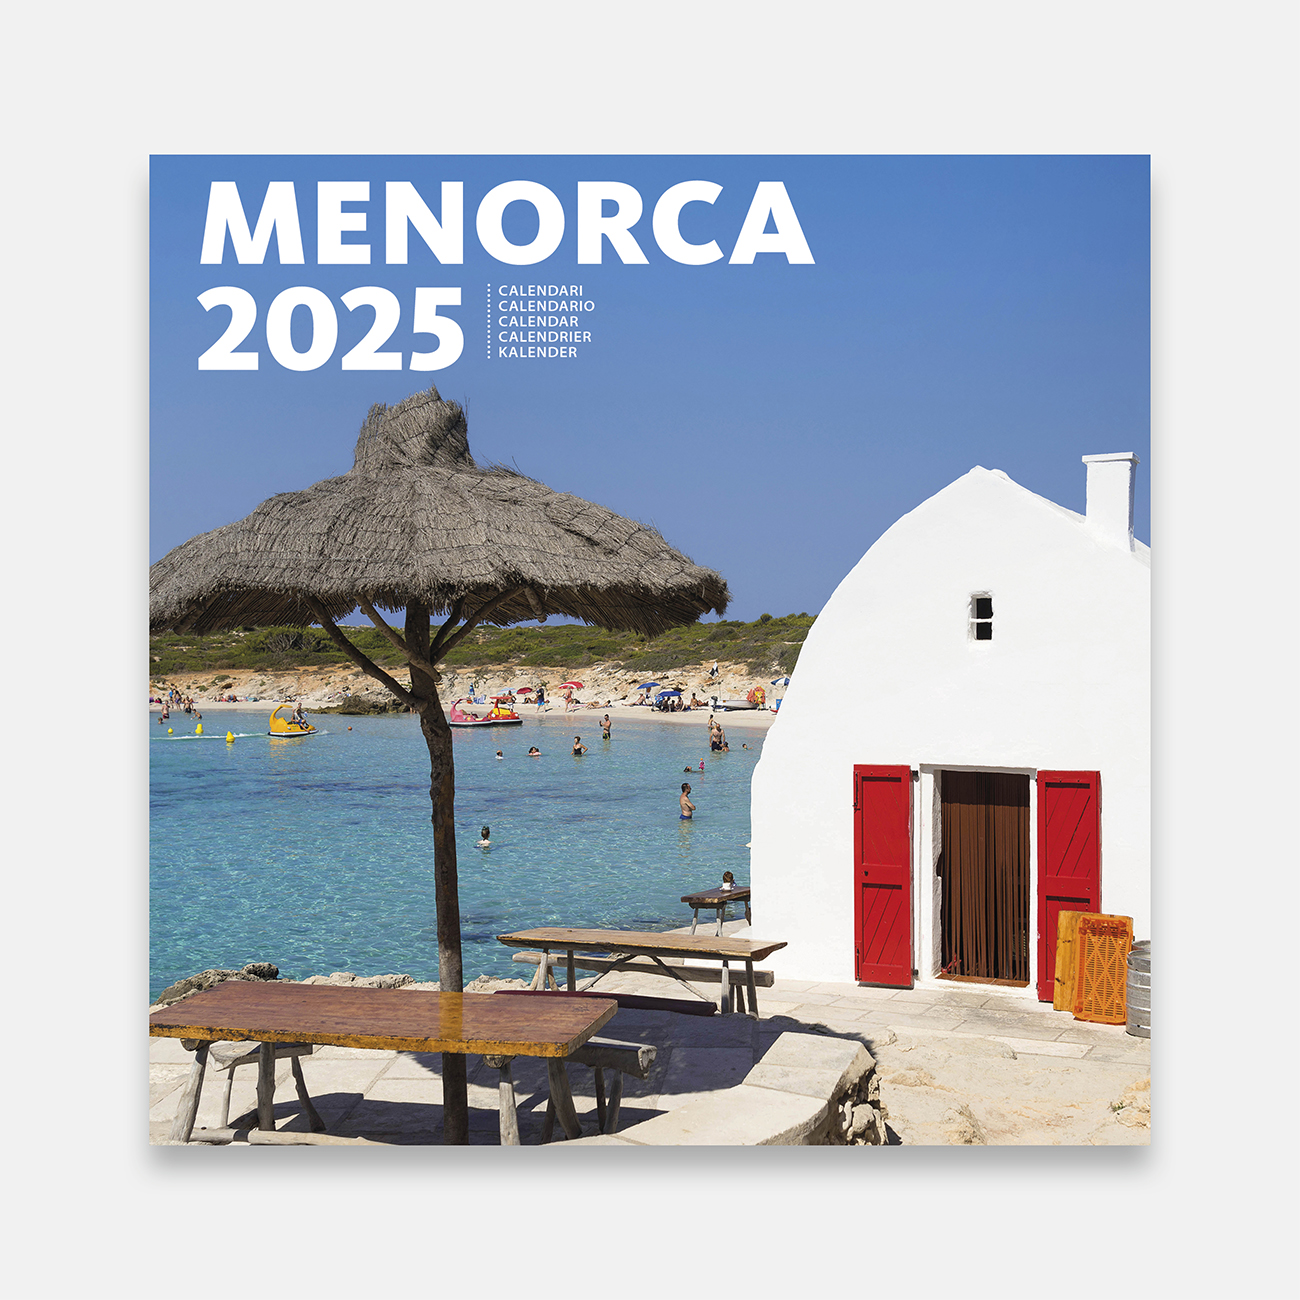 Calendario 2025 Menorca 25me a calendario pared 2025 menorca